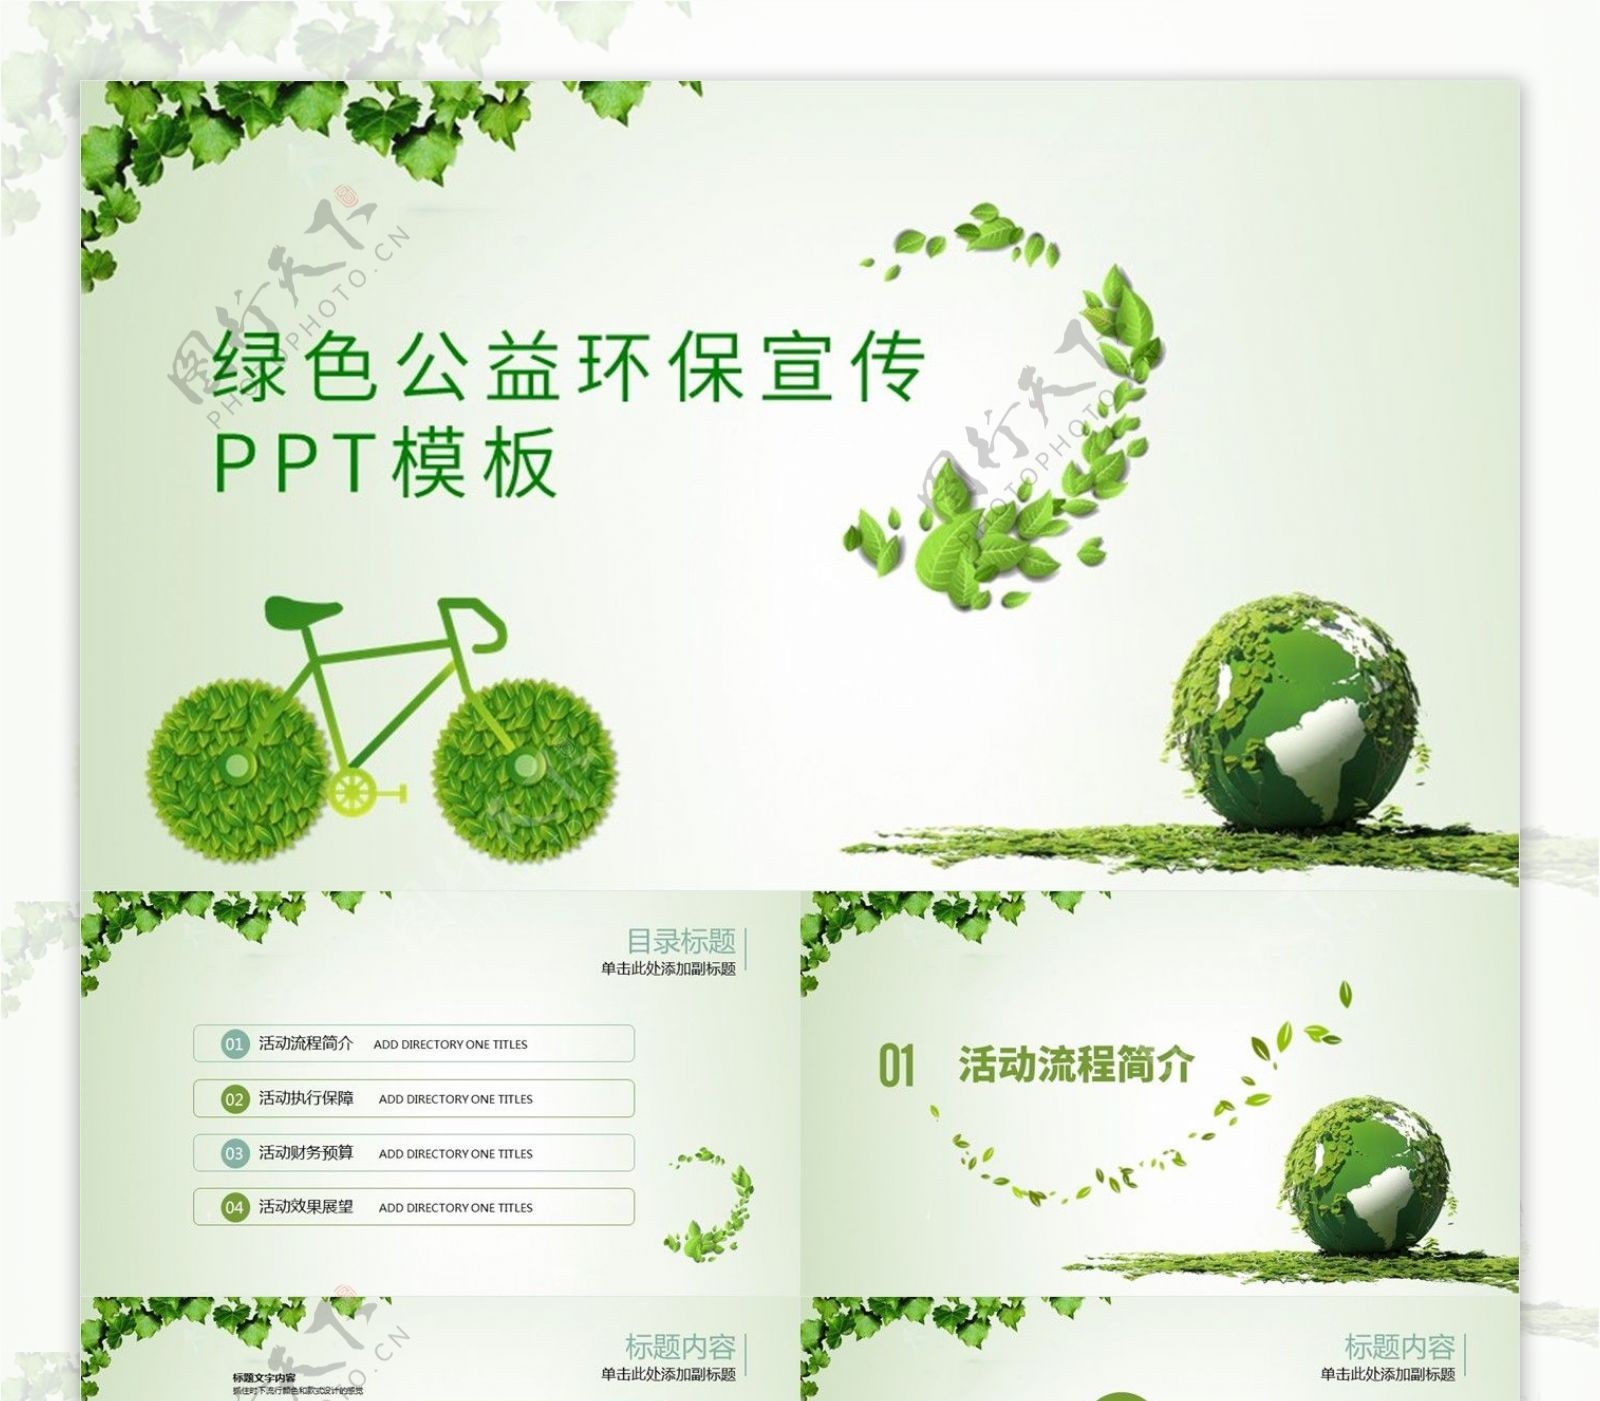 清新绿色公益环保宣传PPT模板